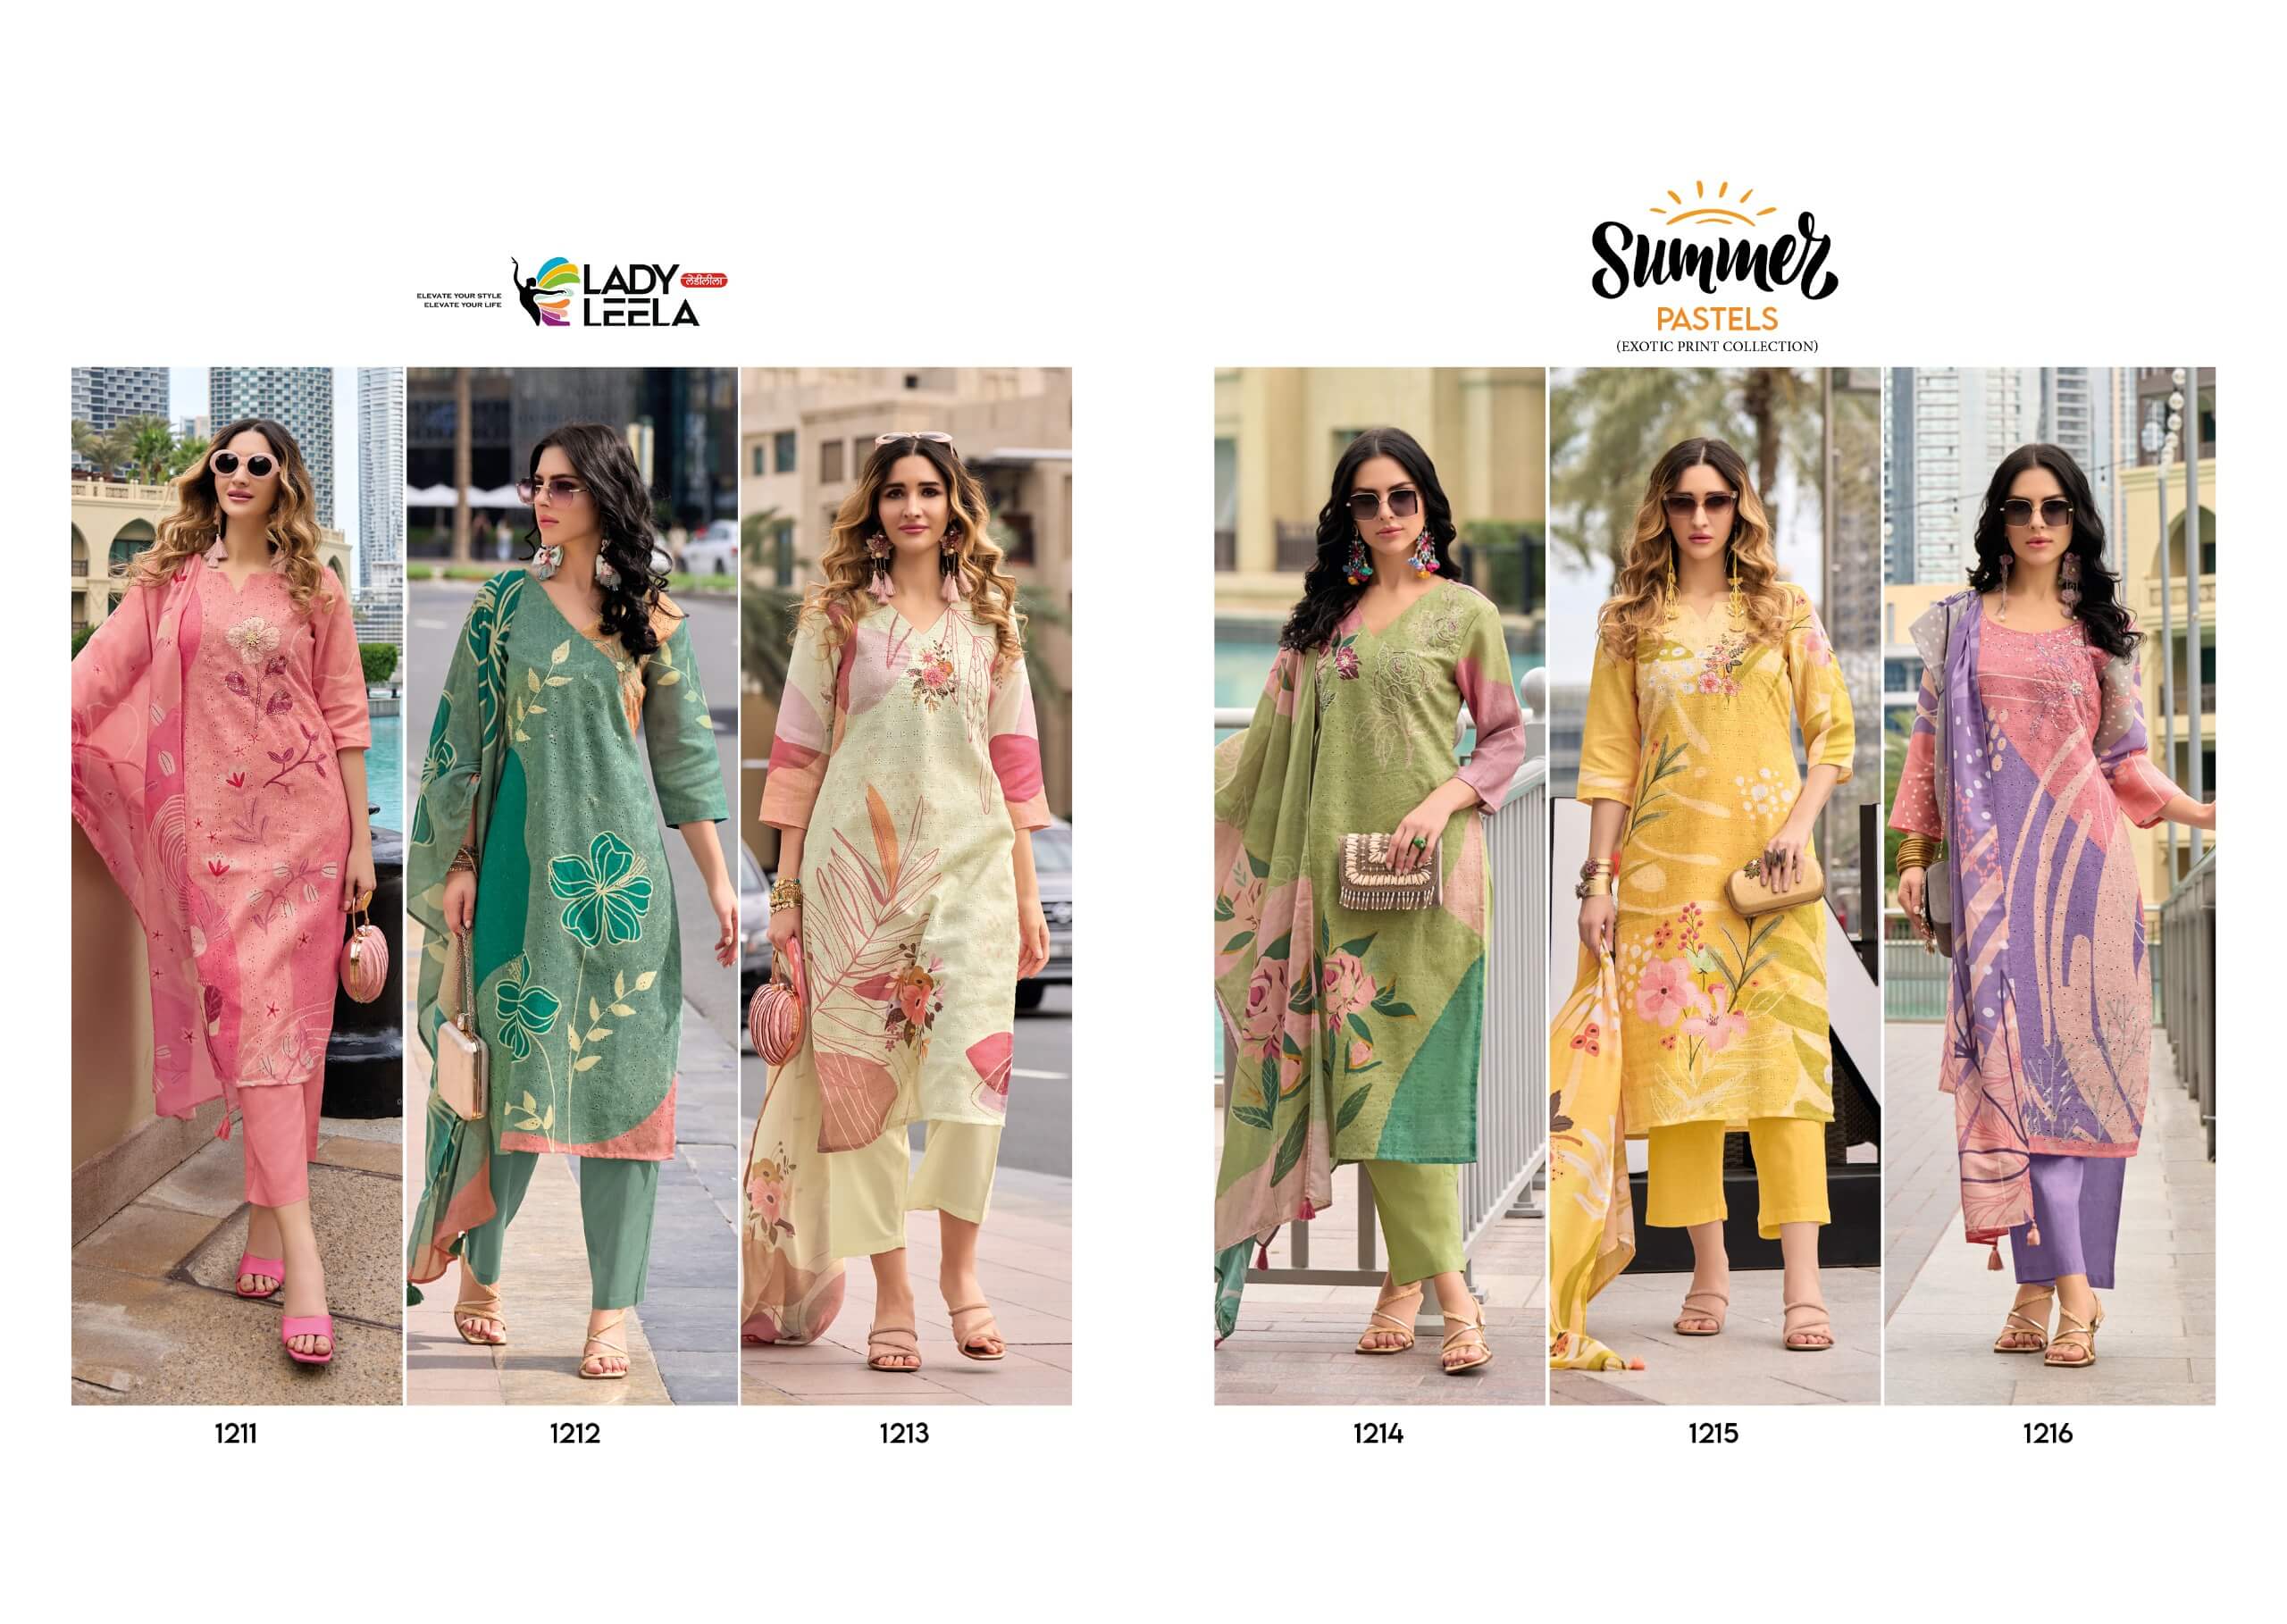 Lady Leela Summer Pastels Printed Salwar Kameez collection 5